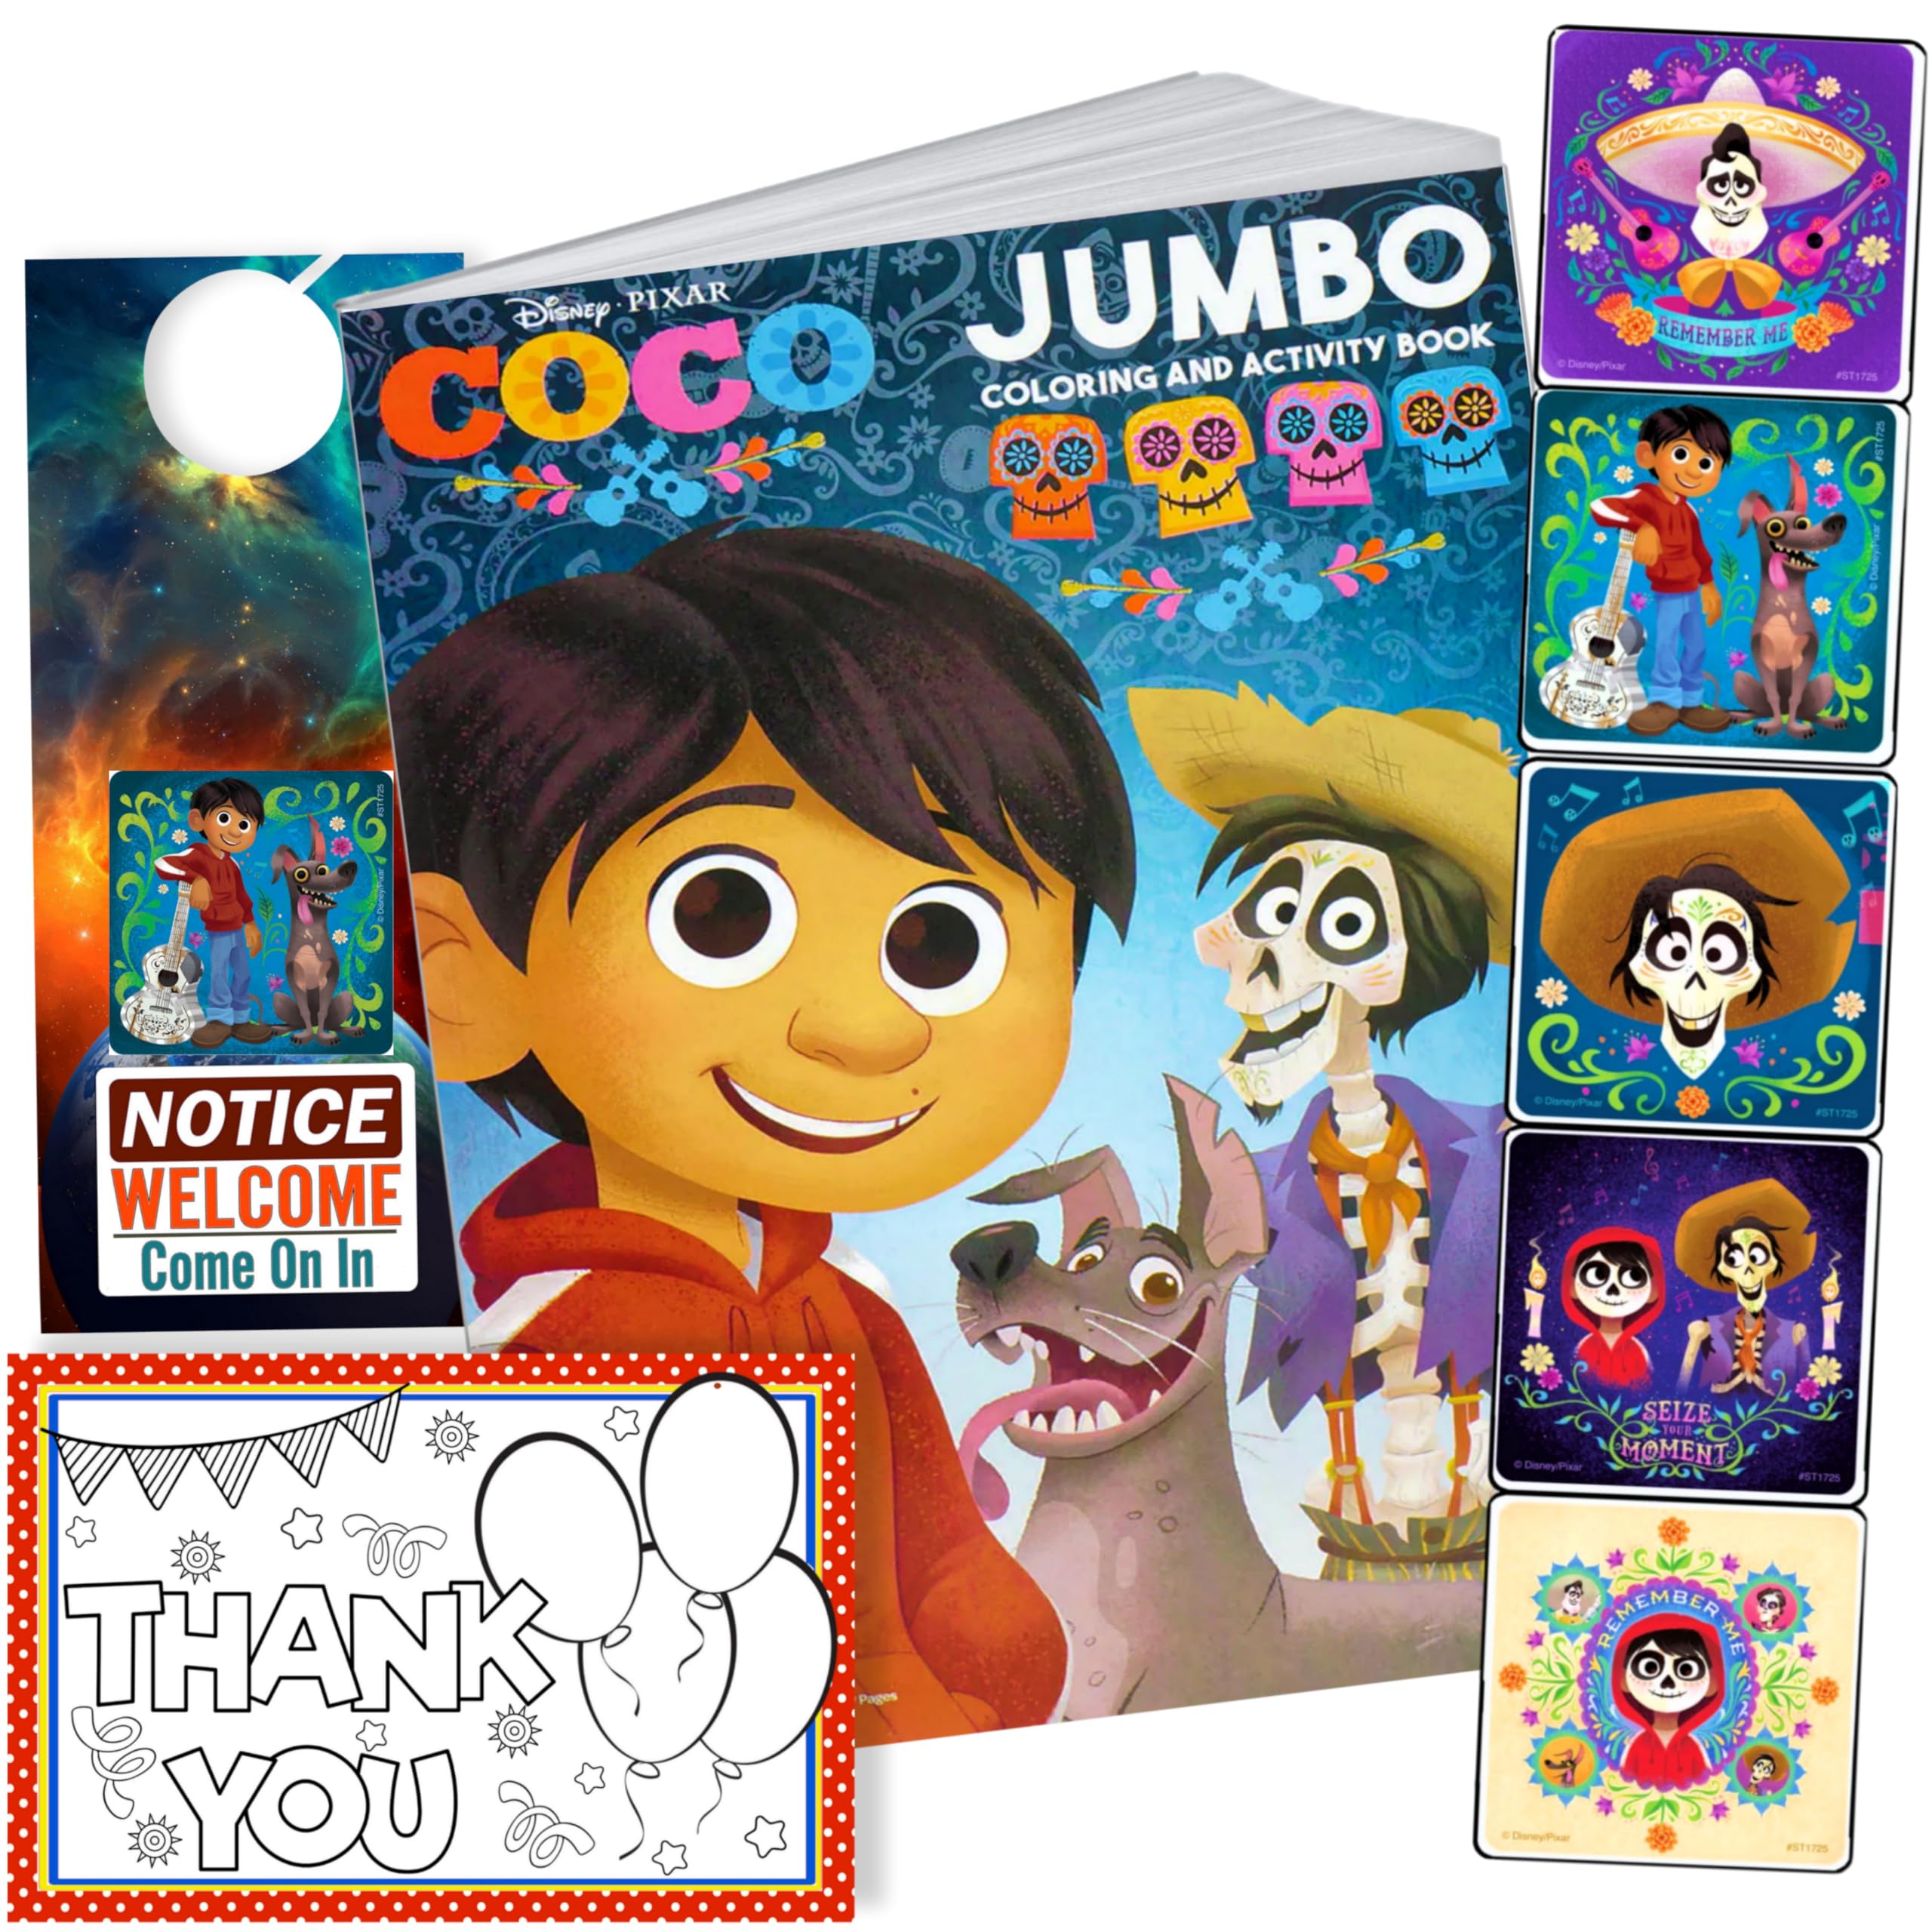 Disney coco coloring book with stickers bundle disney coco movie toys games